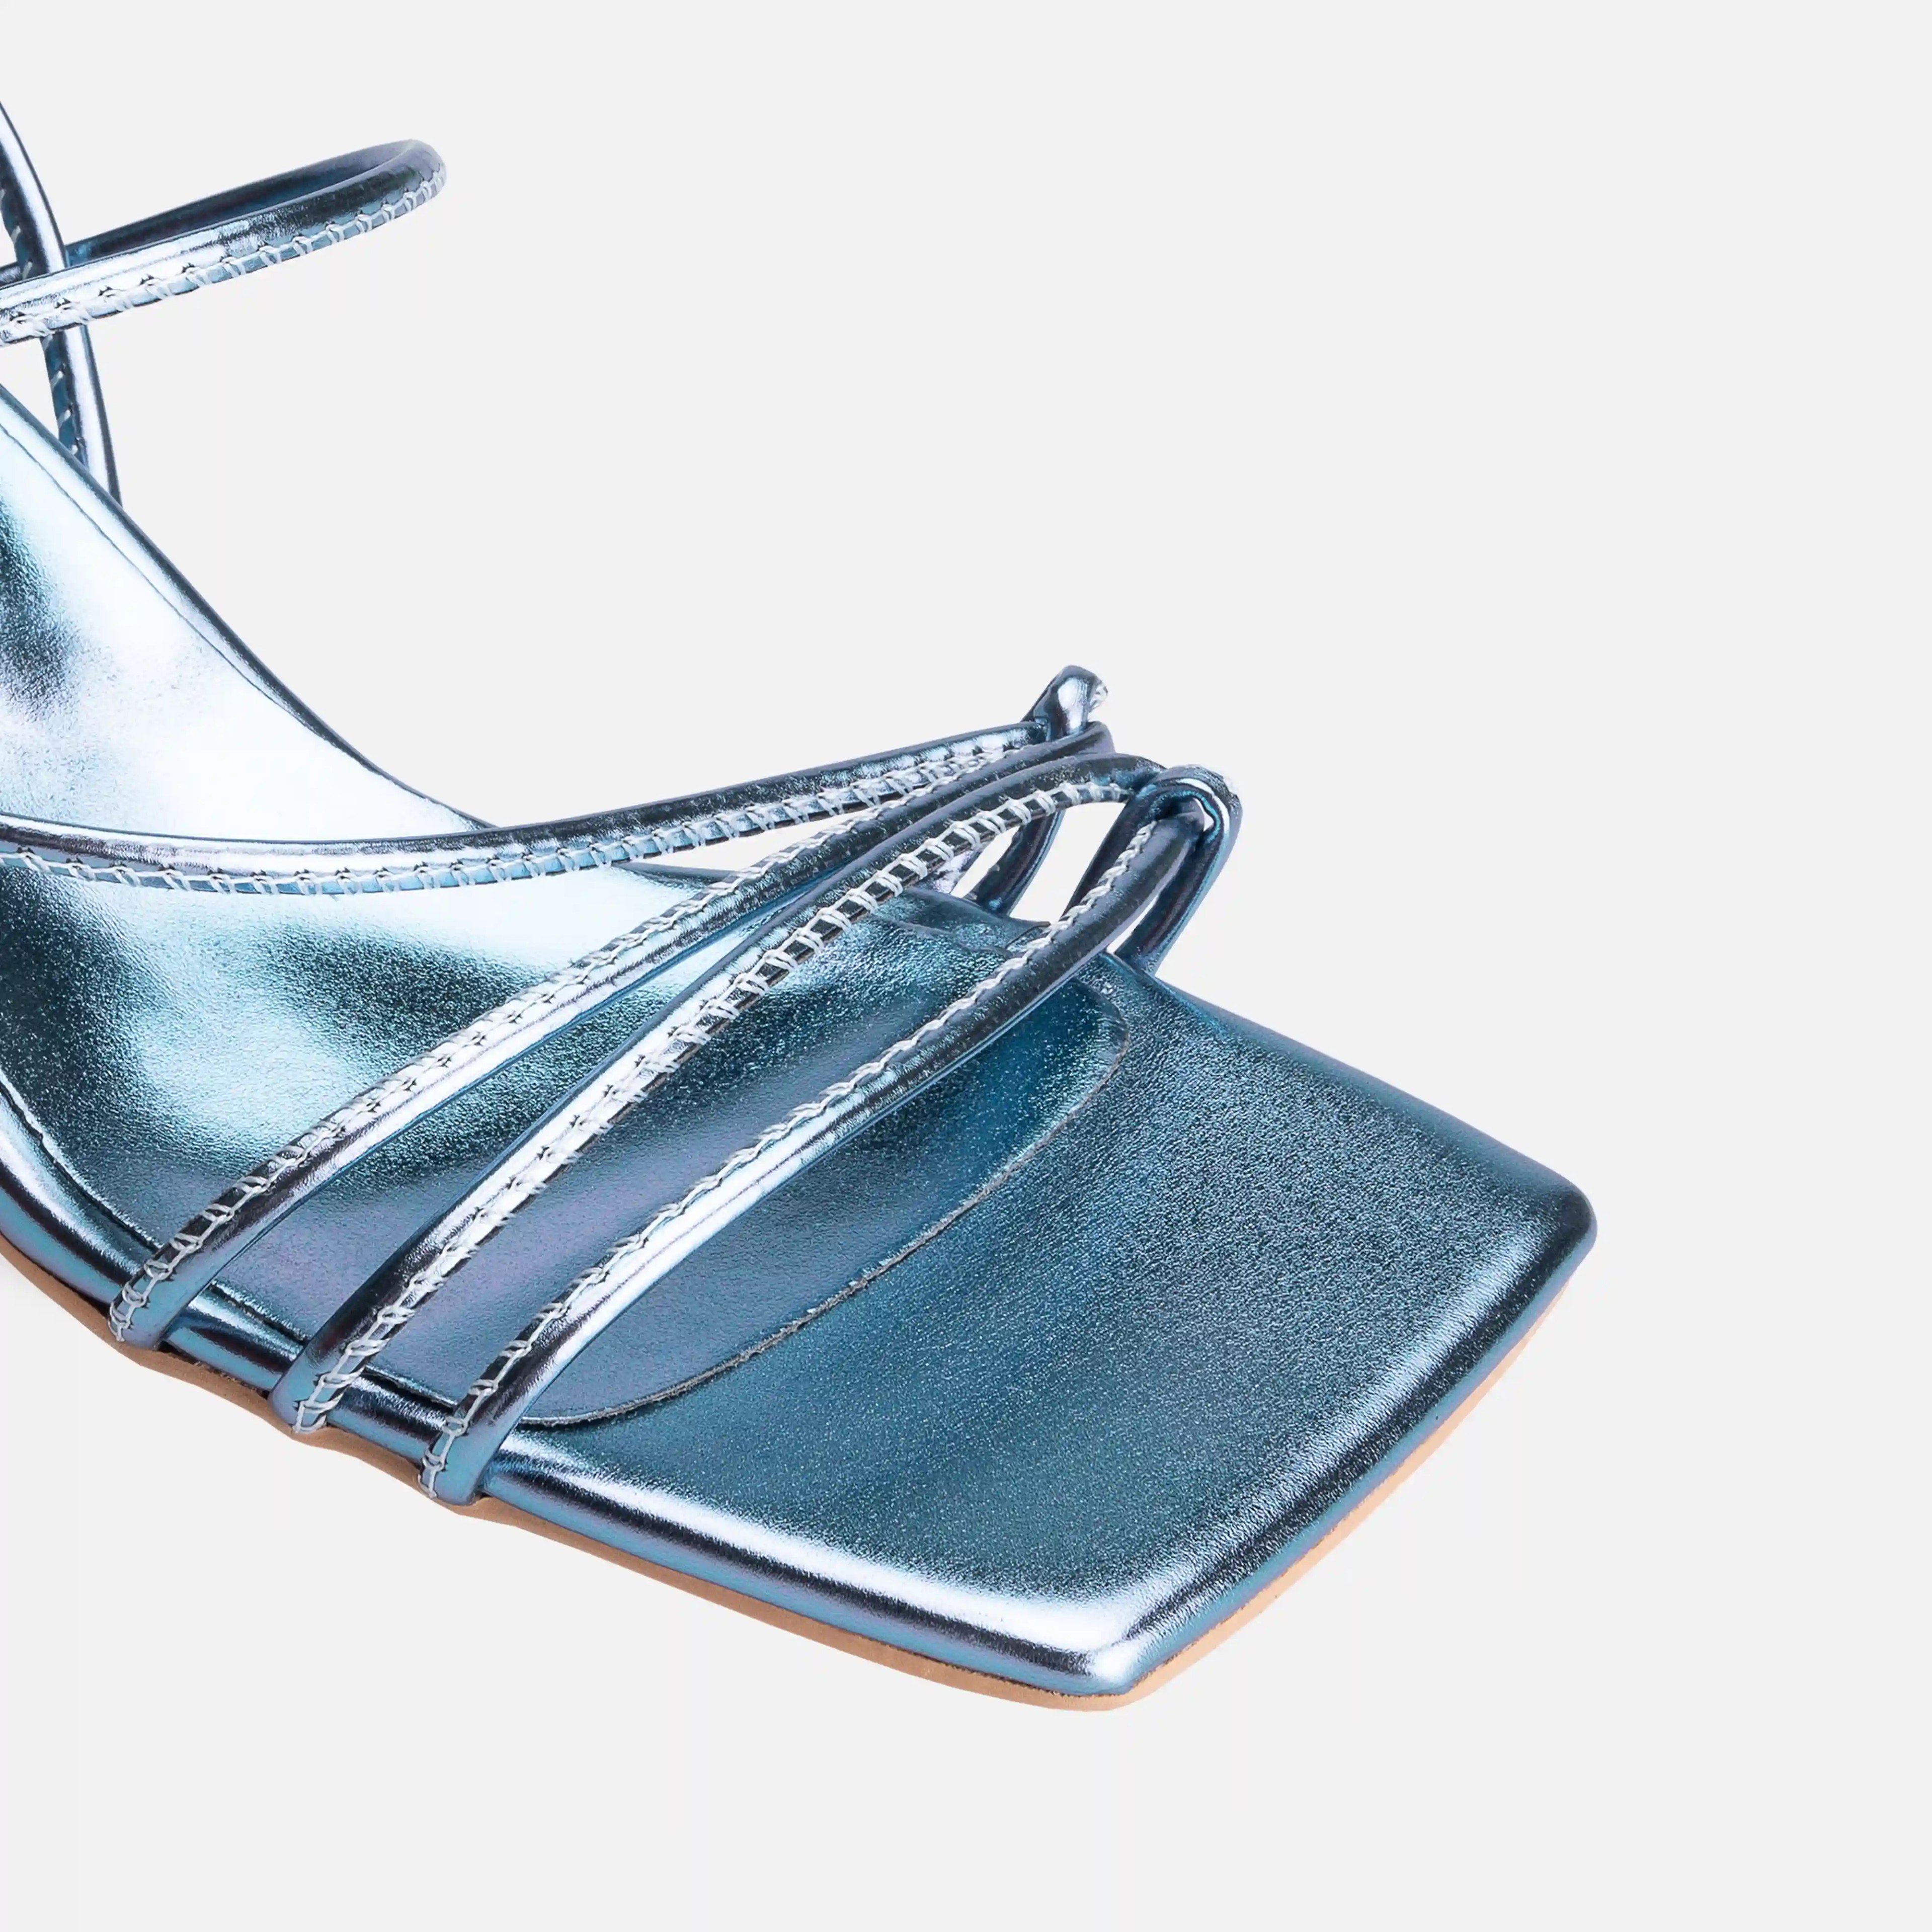 Metalik Bağcıklı Kalın Kısa Topuklu Sandalet  - Mavi